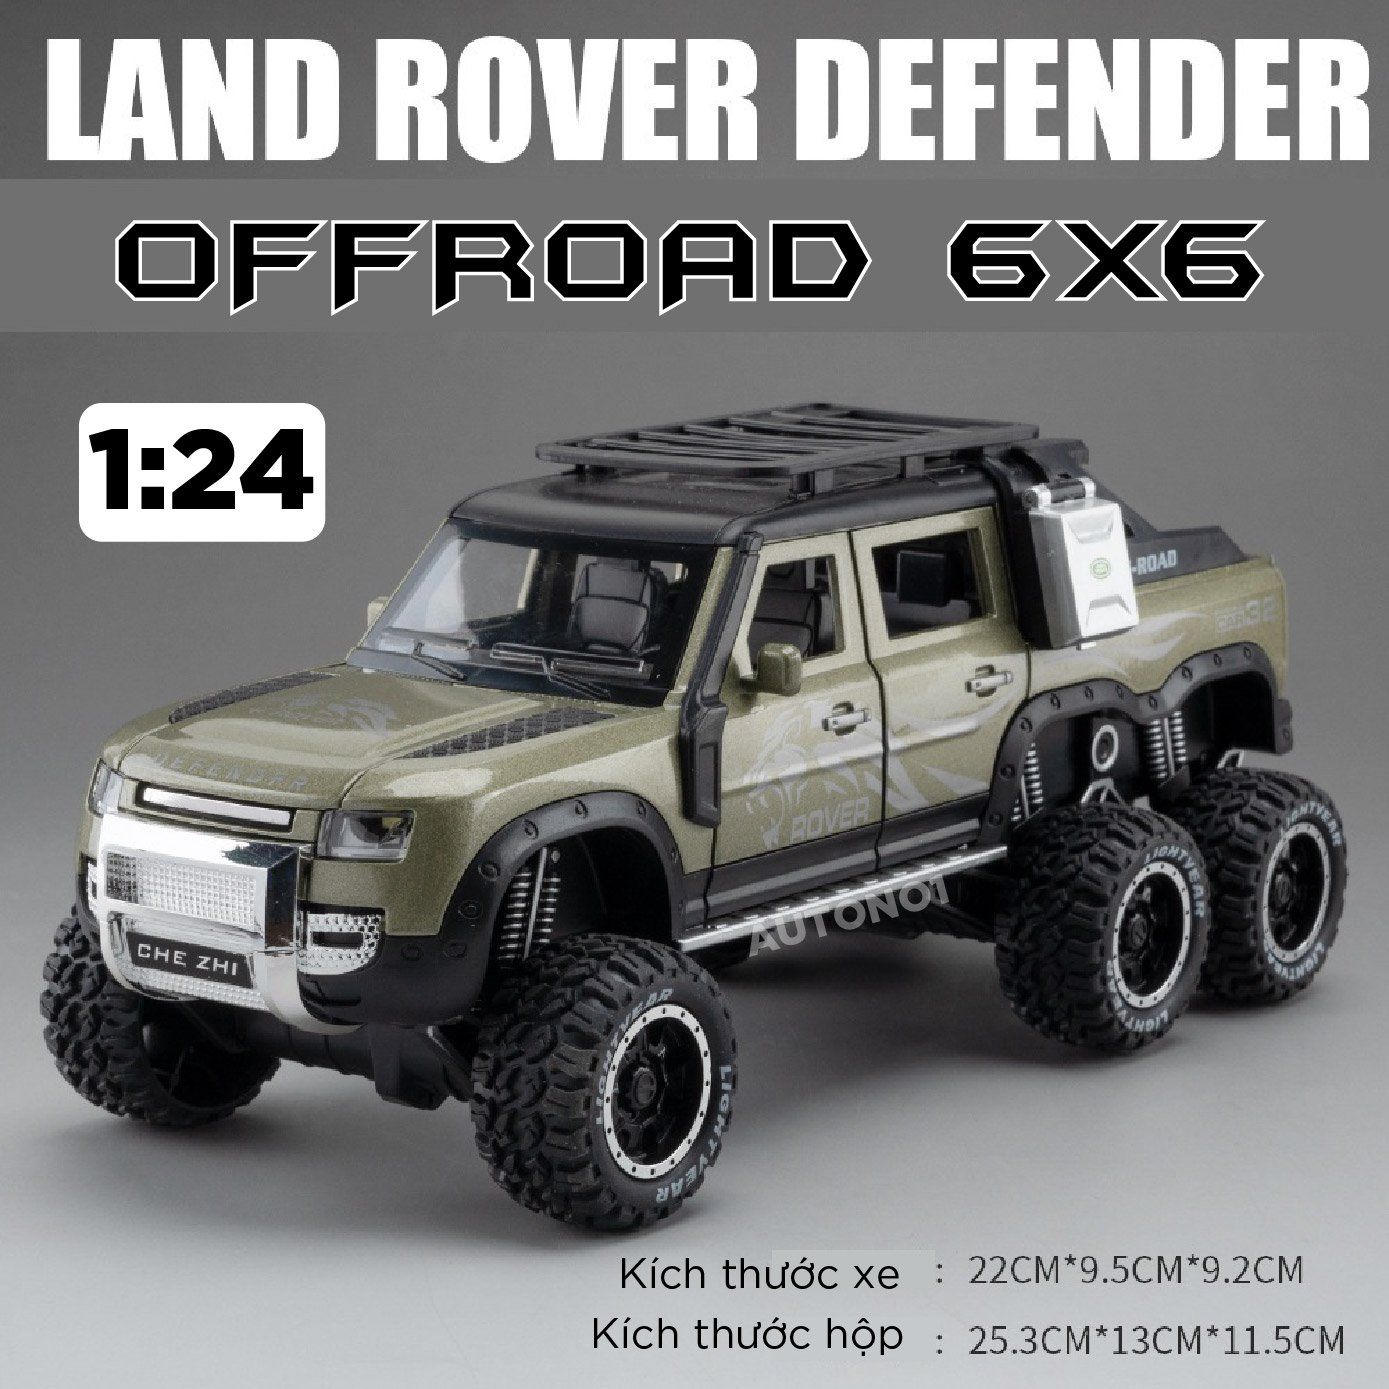  Mô hình xe Land Rover Defender 6x6 Offroad có đèn có âm thanh tỉ lệ 1:24 Chezhi OT430 